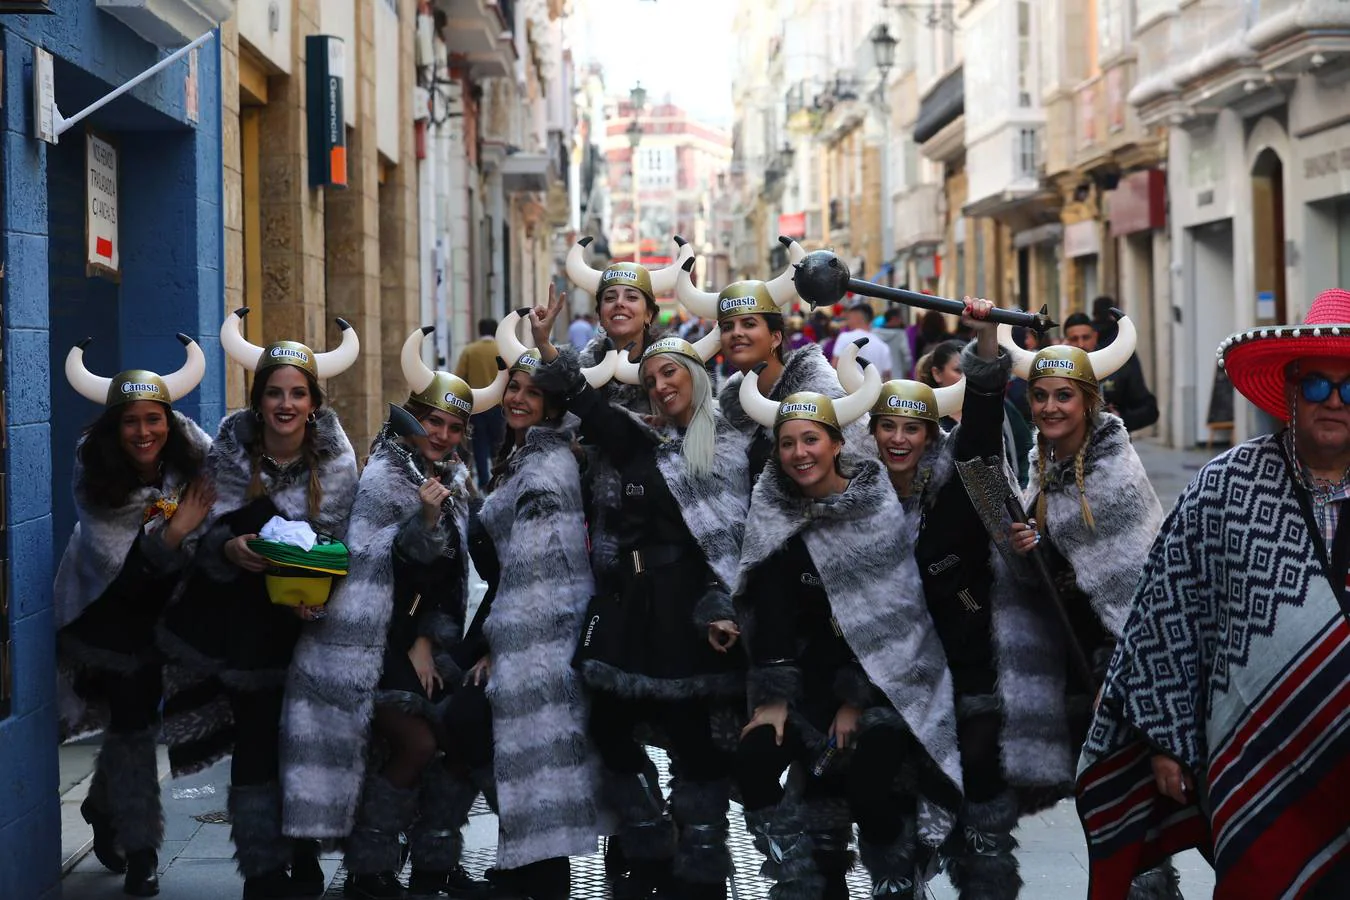 Las coplas inundan las calles de Cádiz de humor y reivindicaciones